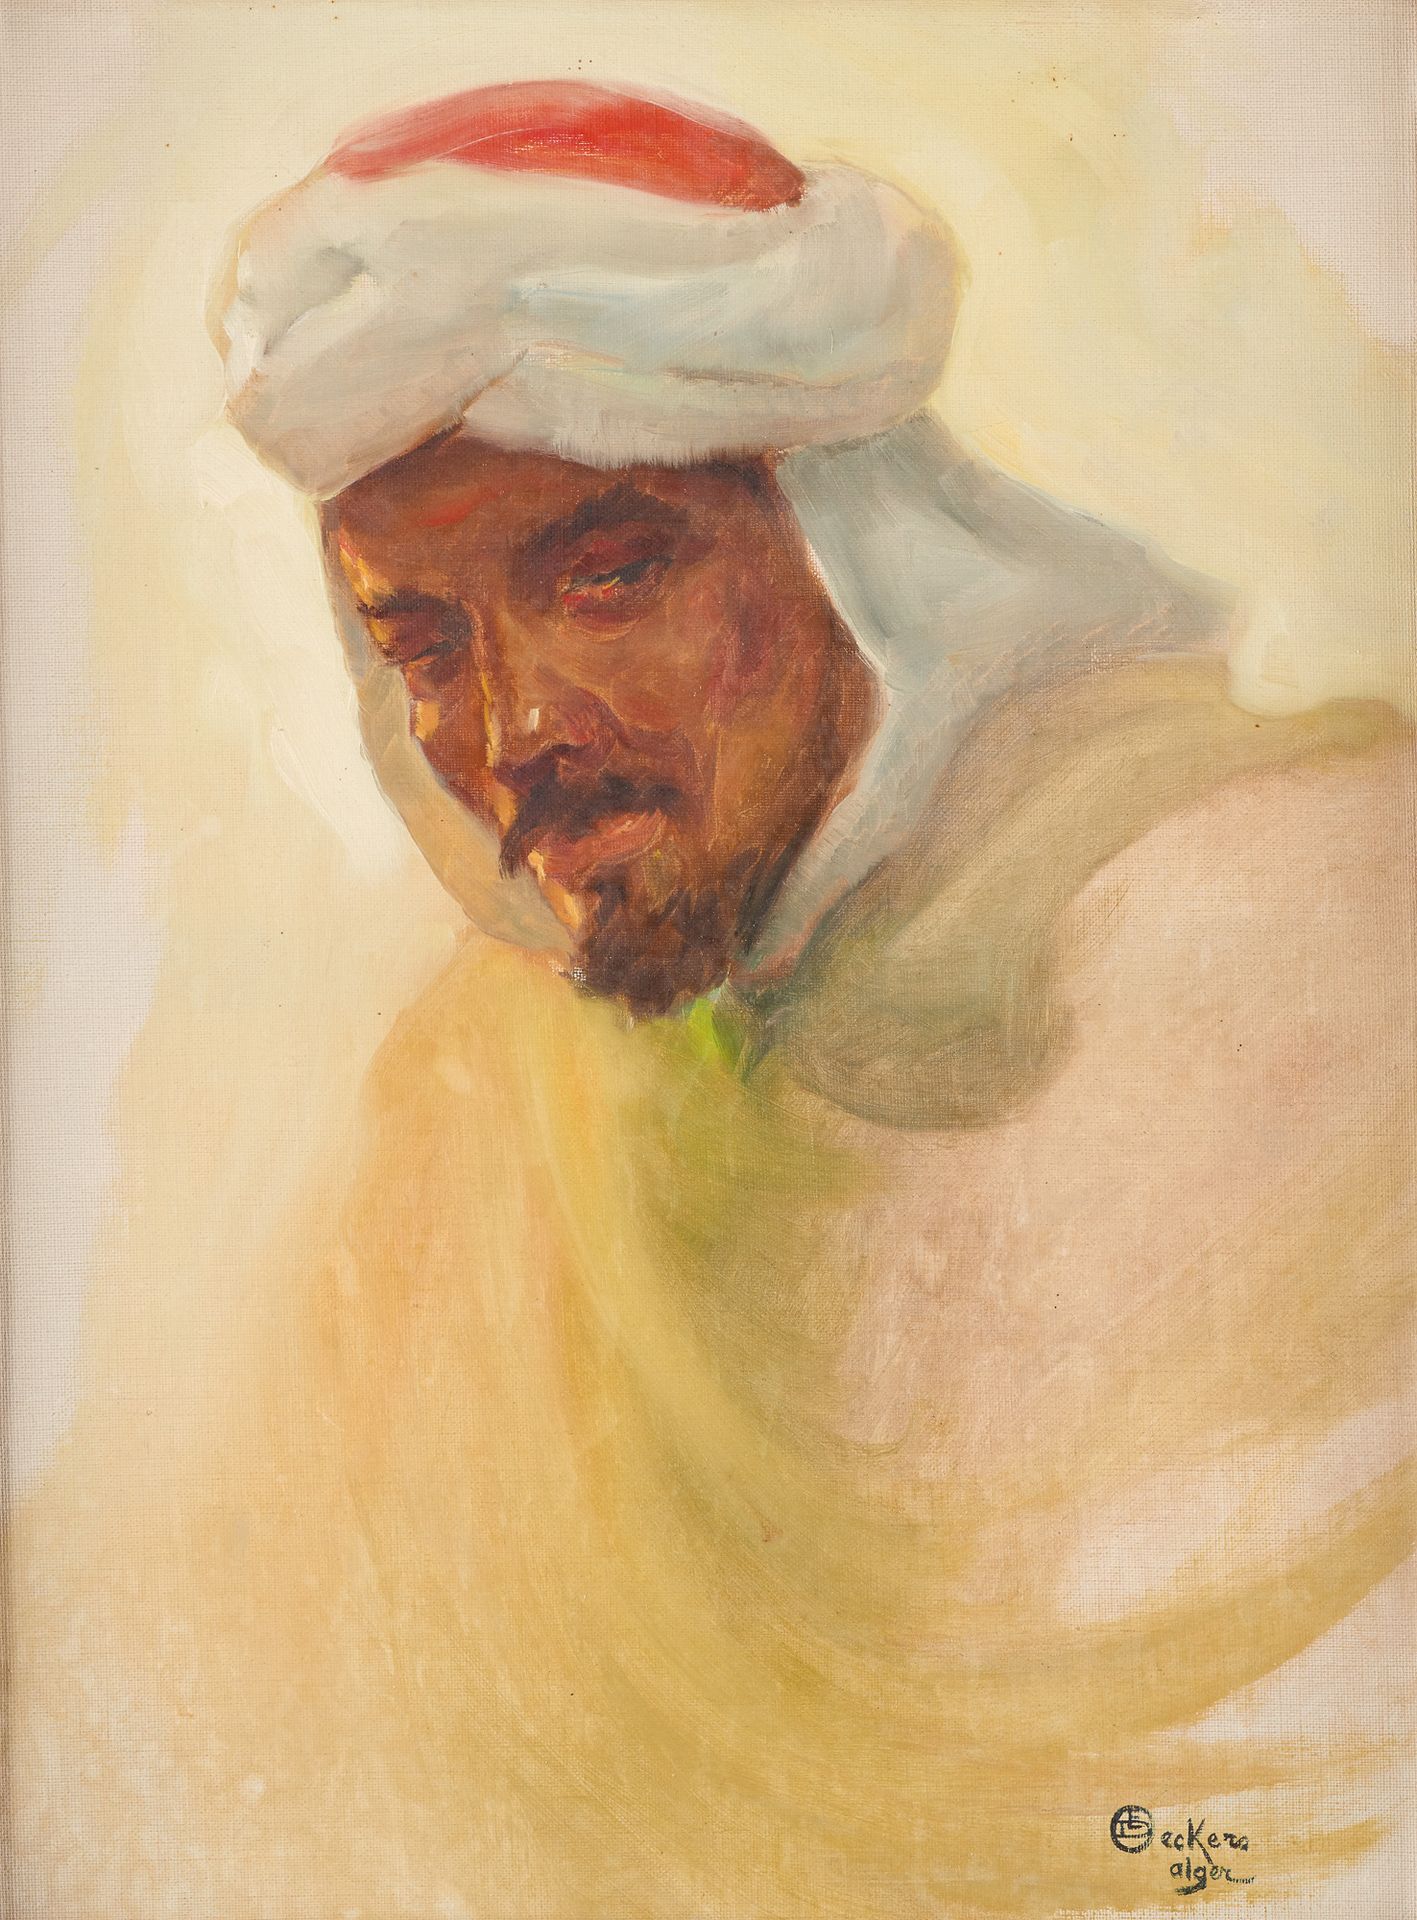 Émile DECKERS École belge (1885-1968) Oil on canvas: Portrait of an Algerian.

S&hellip;